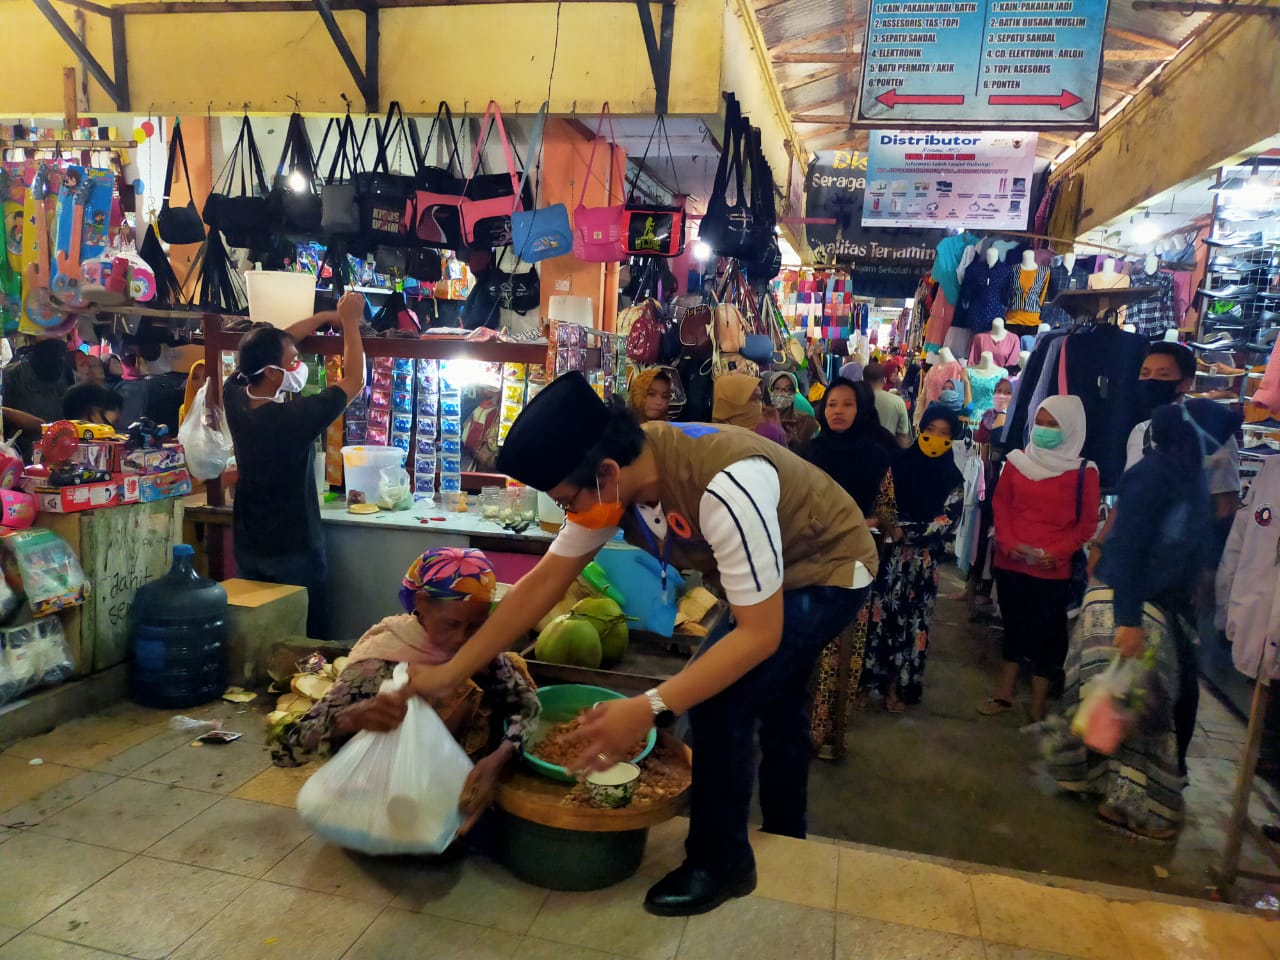 Ra Latif Sosisalisasi di Pasar China Town Bangkalan